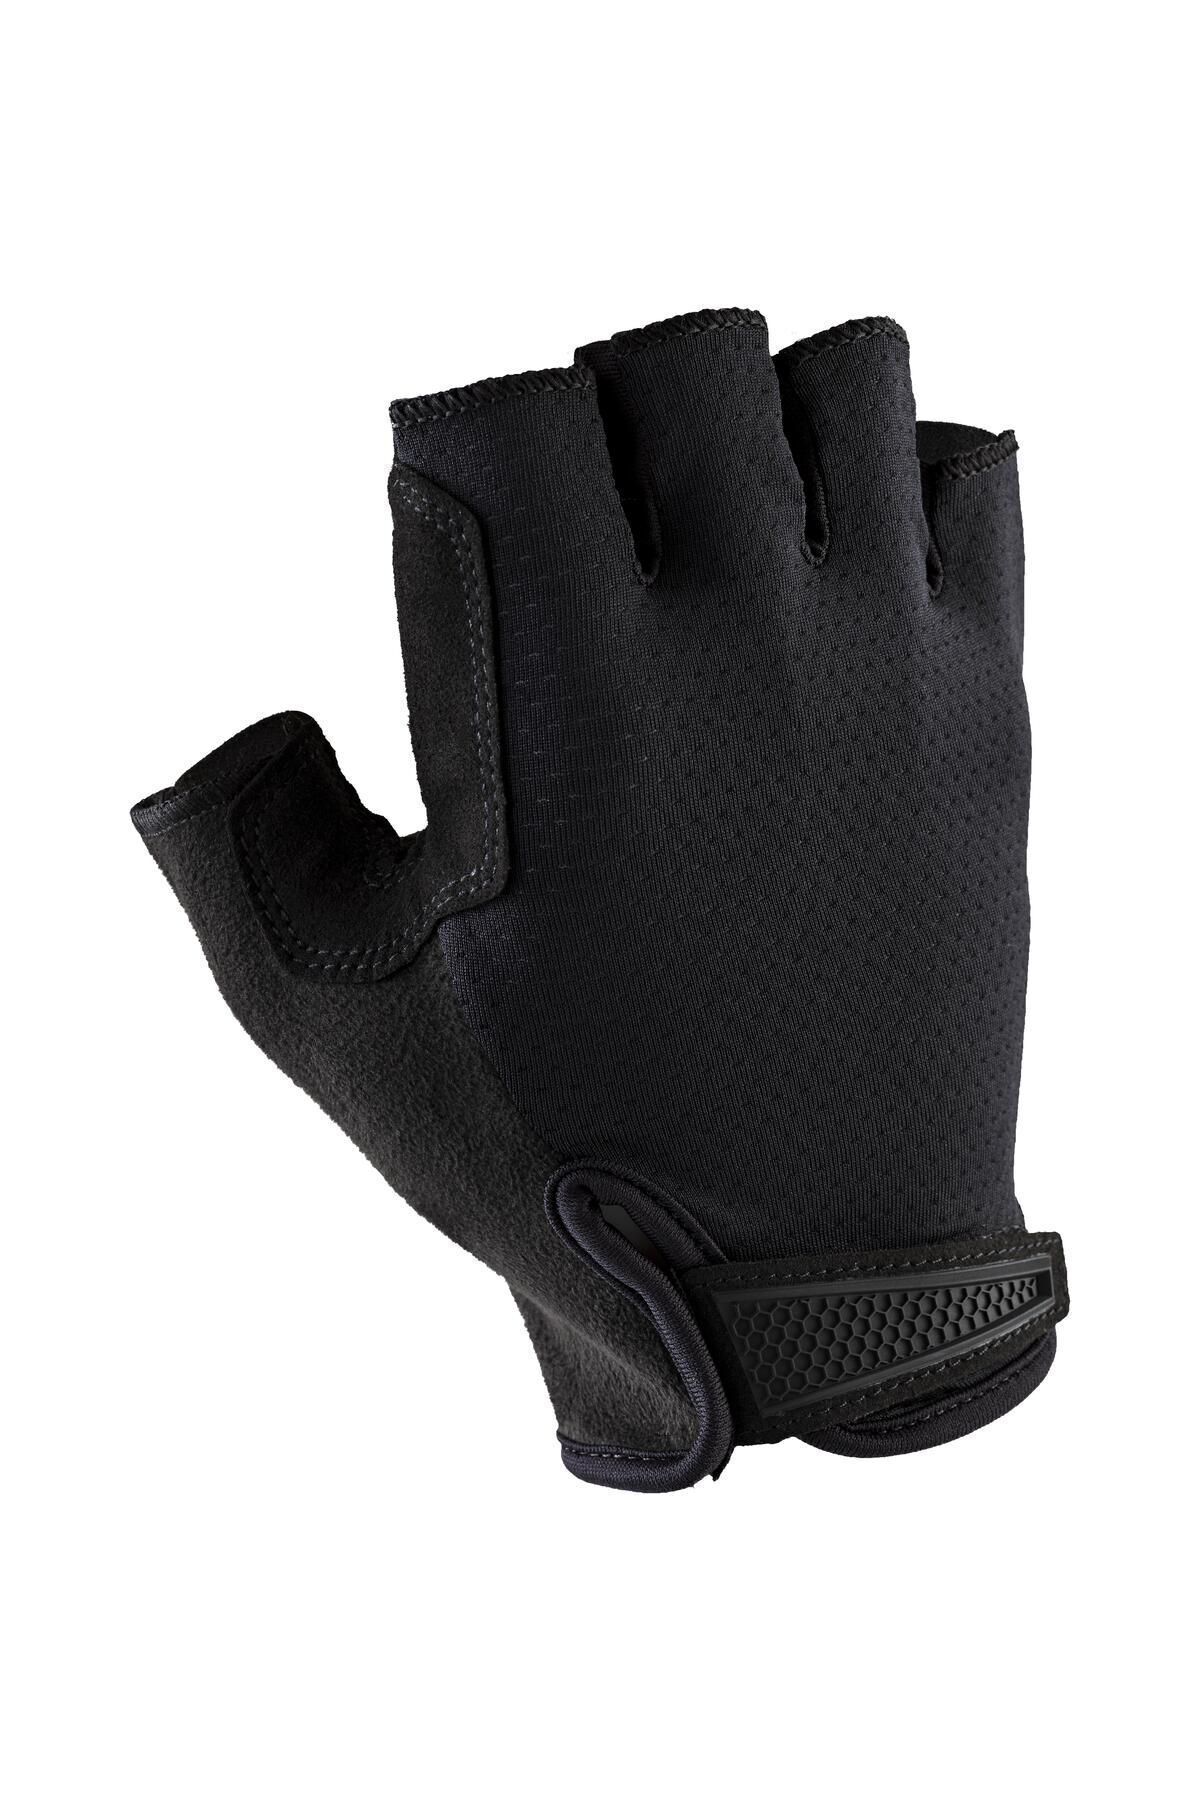 Decathlon Шоссейные перчатки — черные — Шоссейные велосипедные перчатки 900 176731